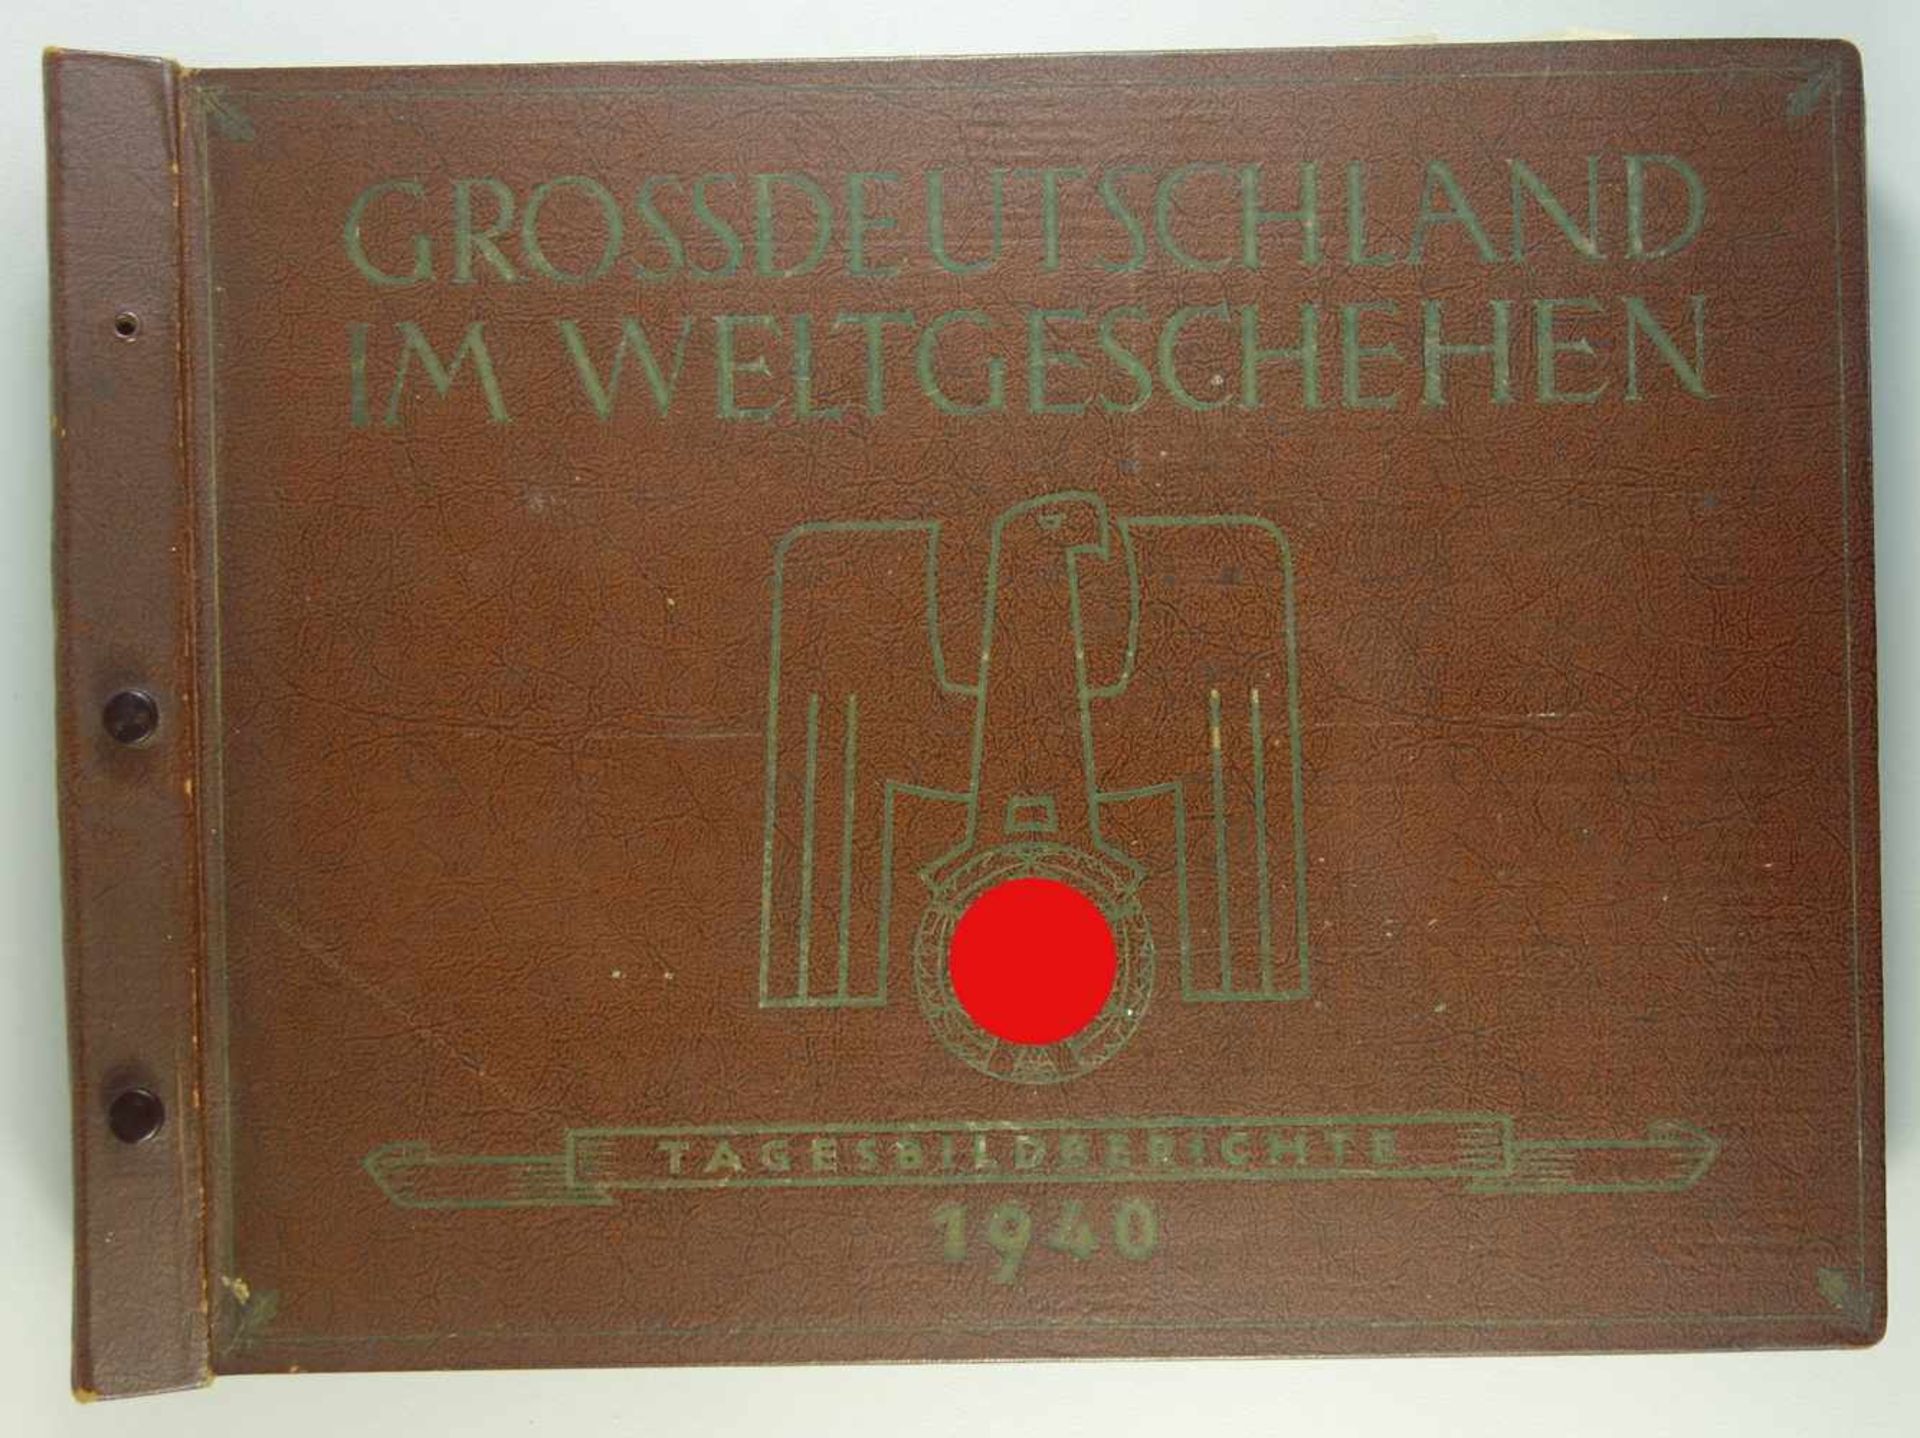 Grossdeutschland im Weltgeschehen, Tagesbildberichte 1940, Hrg. Ernst Braeckow, Geleitwort Hans